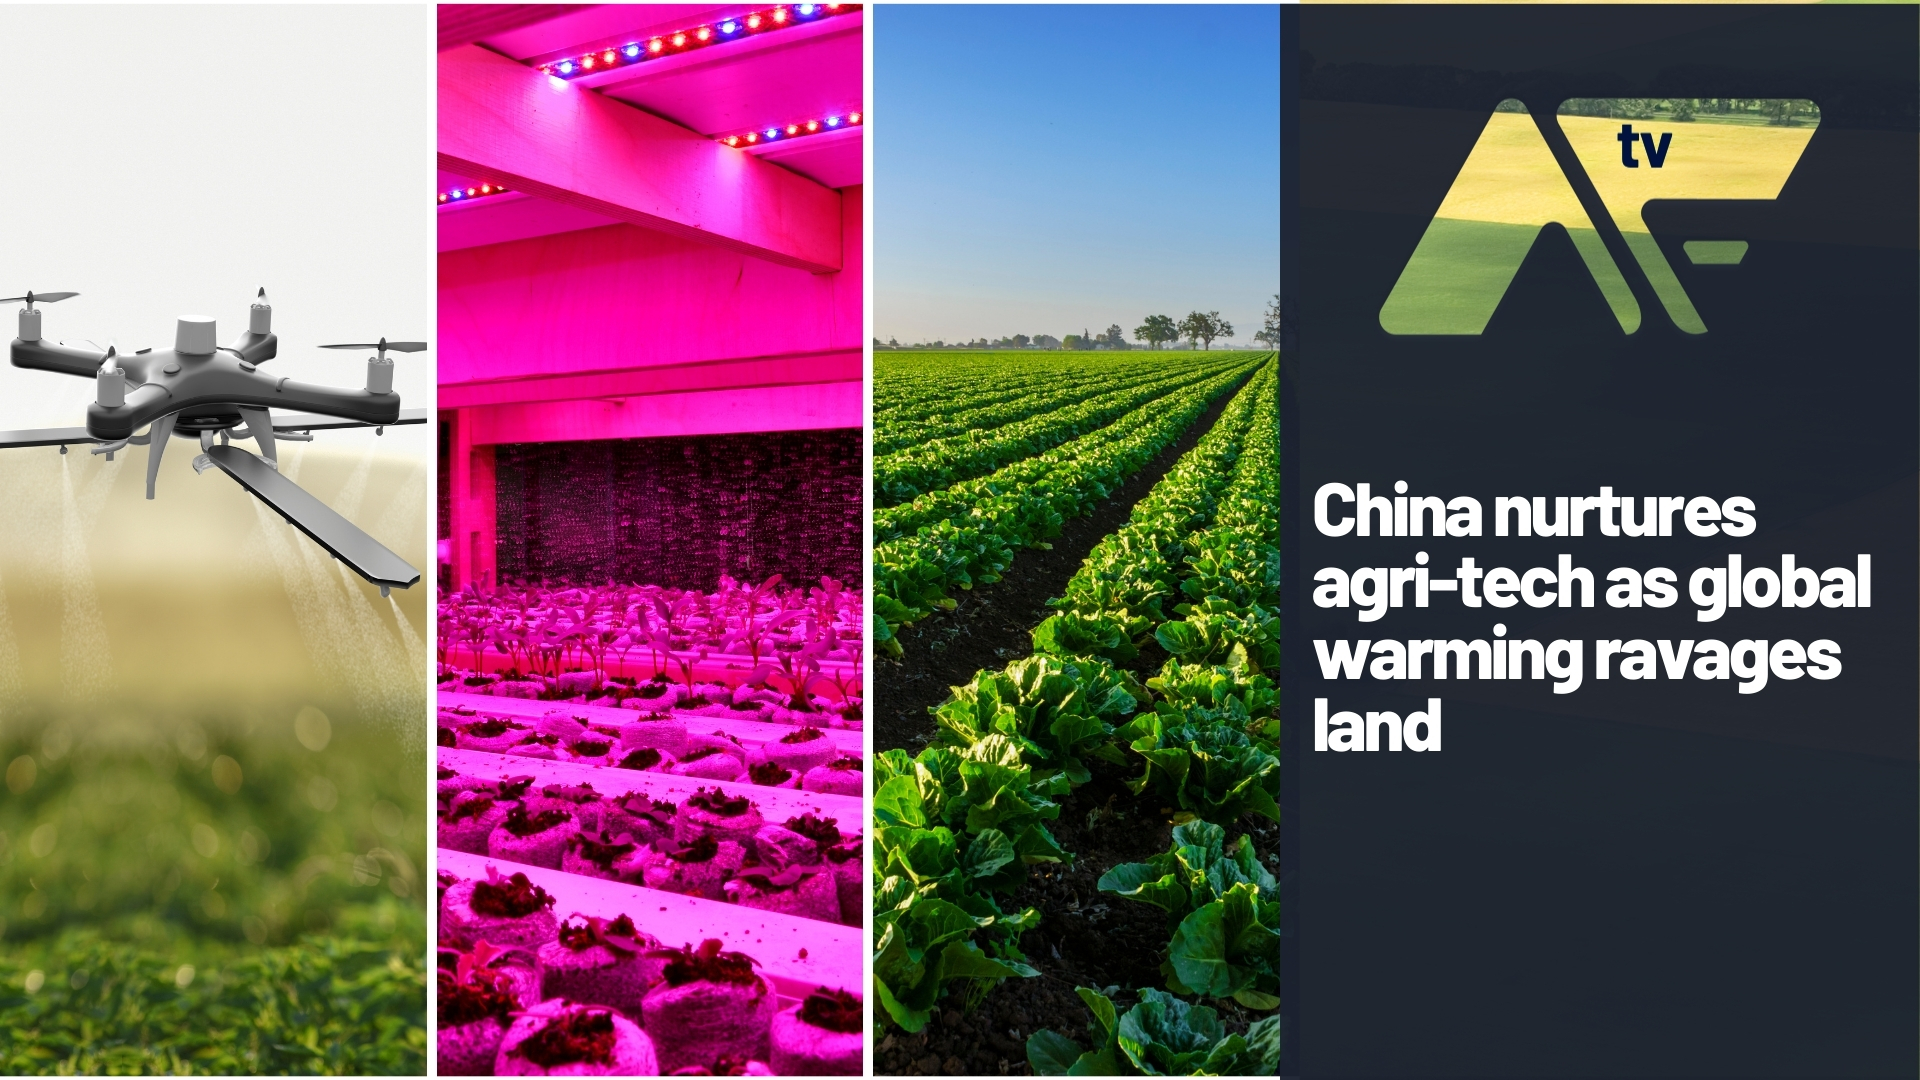 China nurtures agri-tech as global warming ravages land